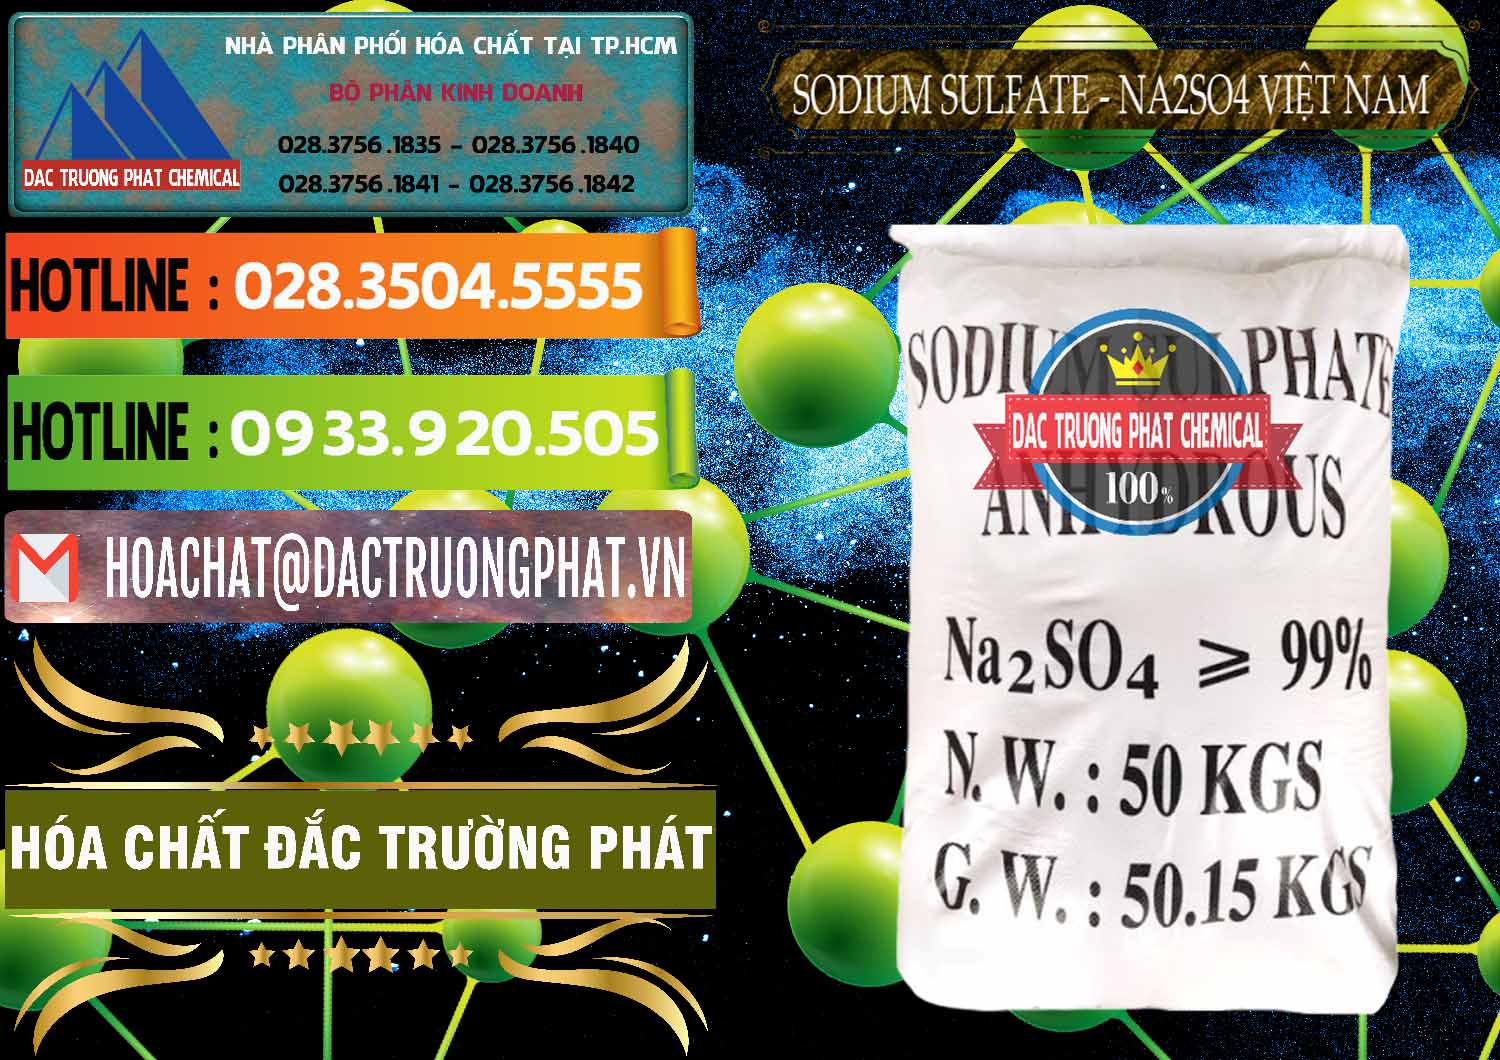 Đơn vị cung cấp và phân phối Sodium Sulphate - Muối Sunfat Na2SO4 Việt Nam - 0355 - Cty cung cấp _ phân phối hóa chất tại TP.HCM - cungcaphoachat.com.vn